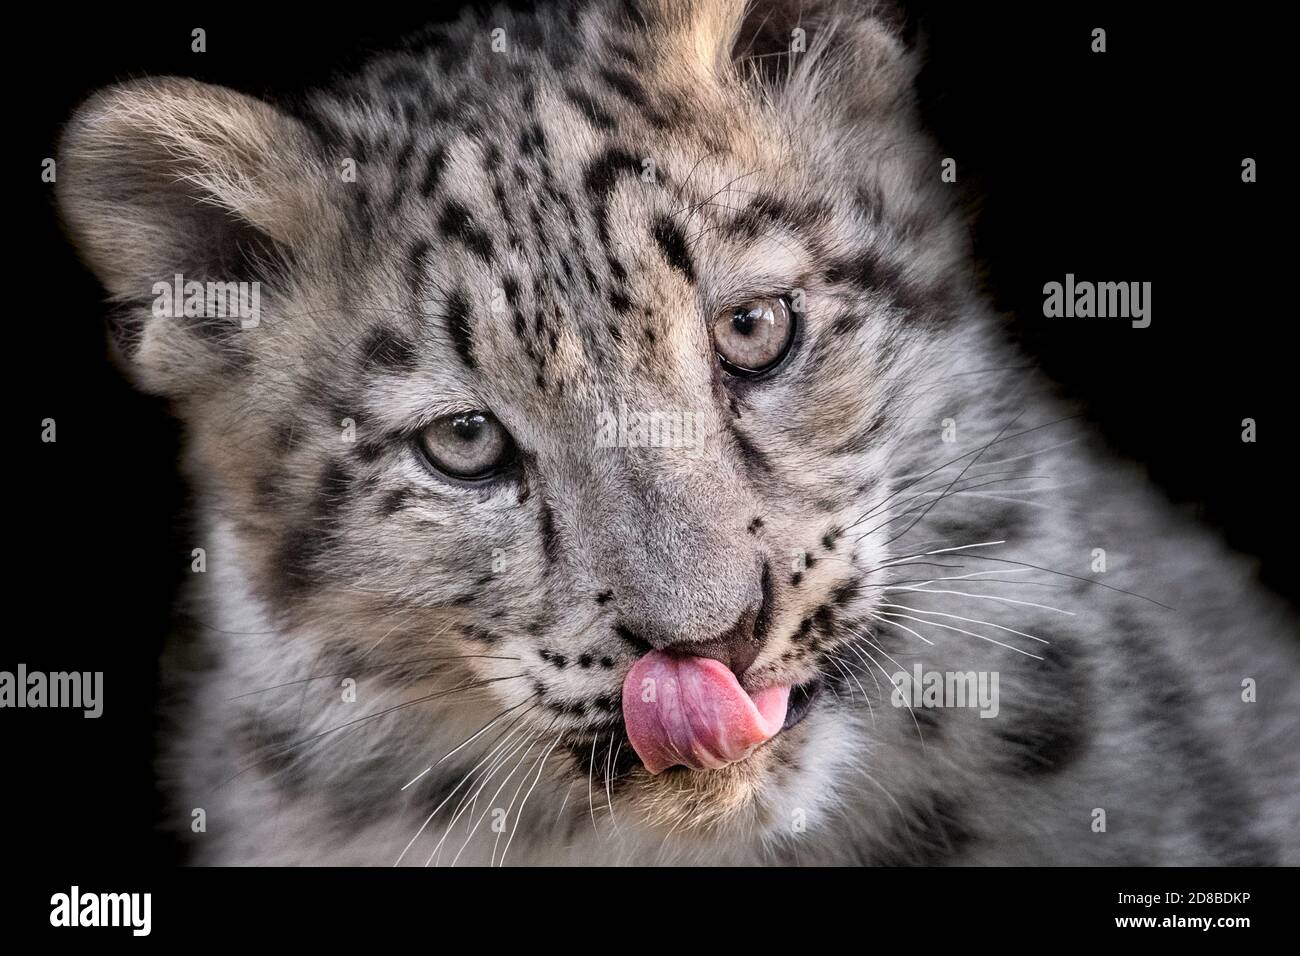 cub de léopard des neiges de trois mois, avec langue sortie Banque D'Images